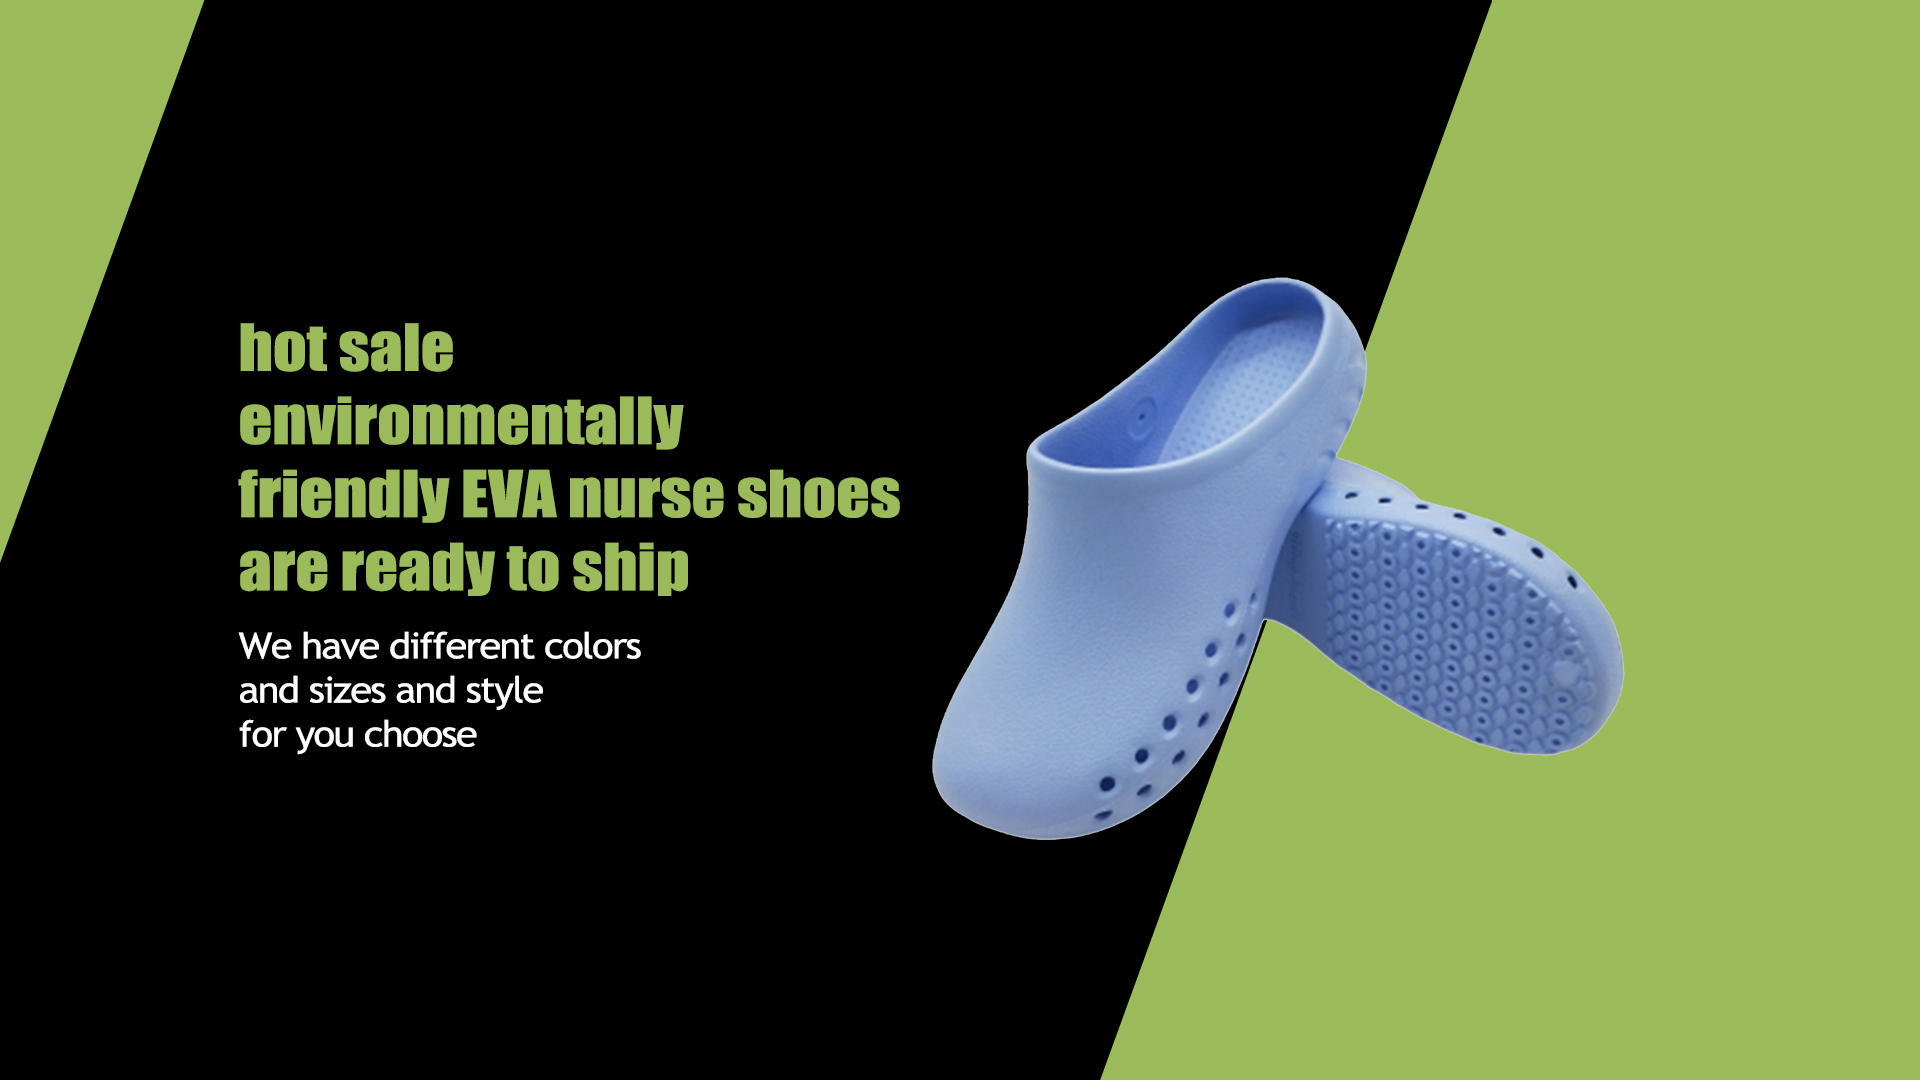 горячая распродажа экологически чистой обуви медсестры EVA готова к отправке